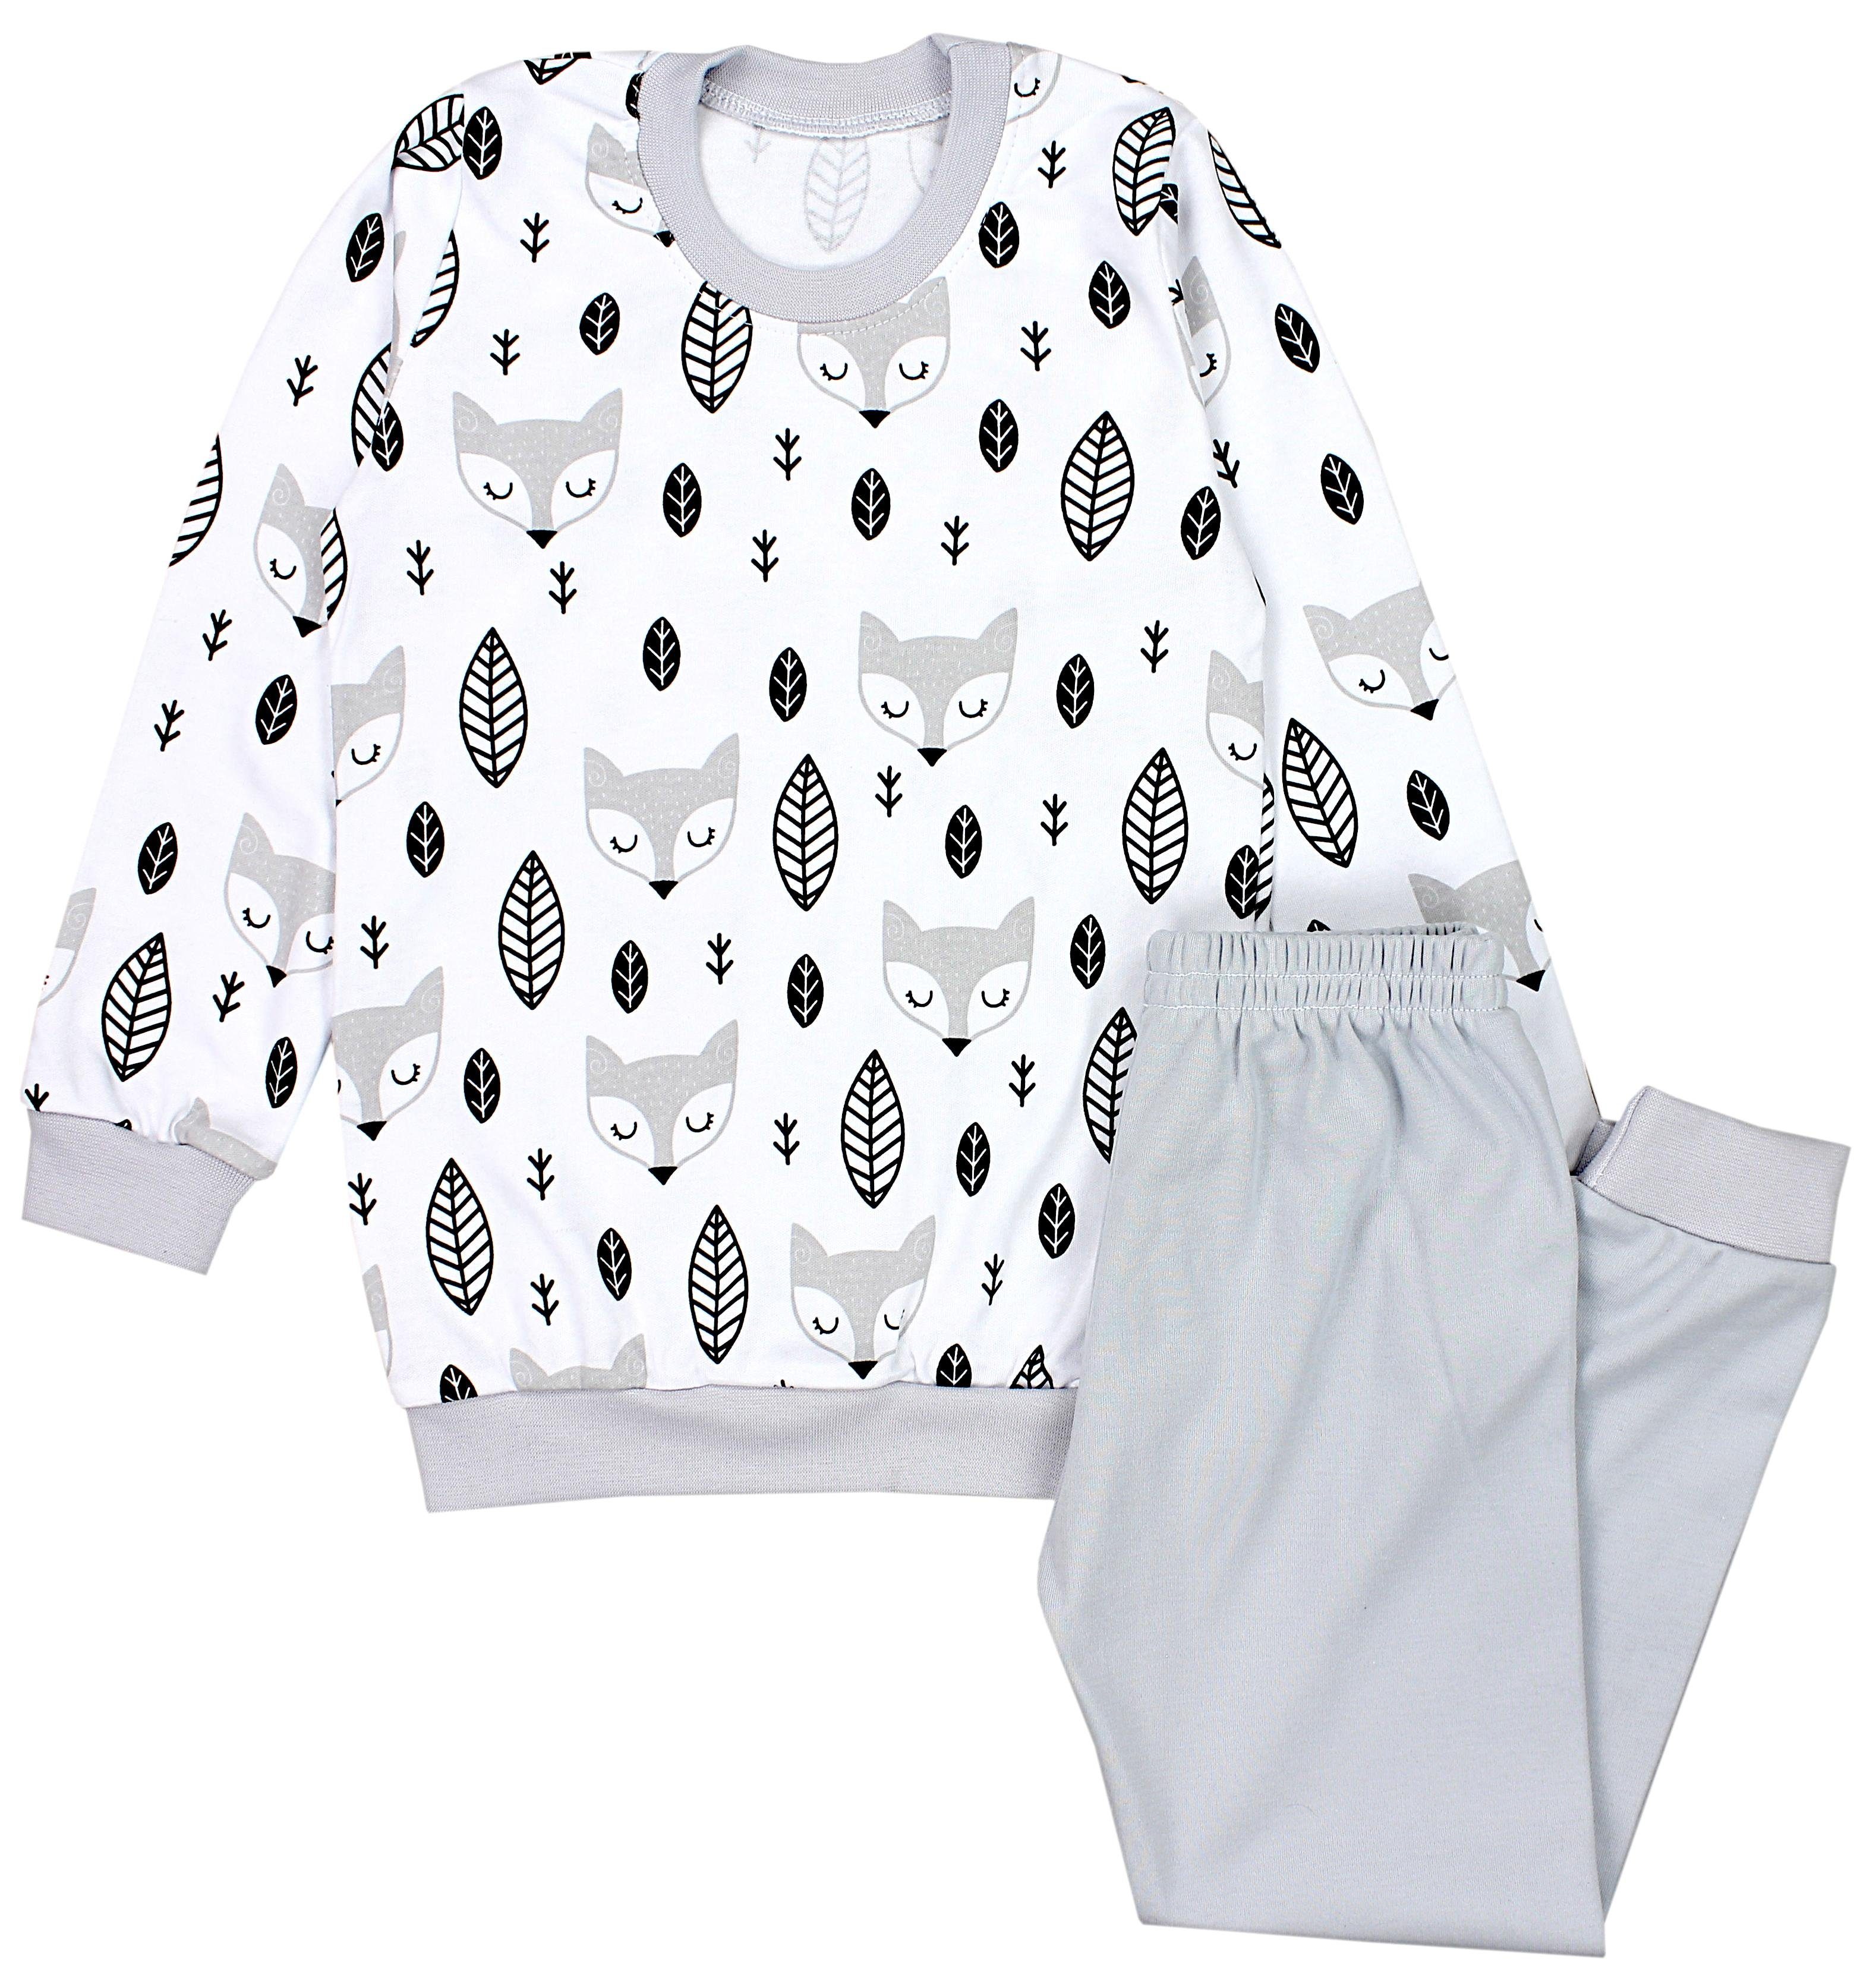 Langarm Jungen Kinder Pyjama TupTam Schlafanzug Set Schlafanzug Grau 2-teilig Nachtwäsche Füchse